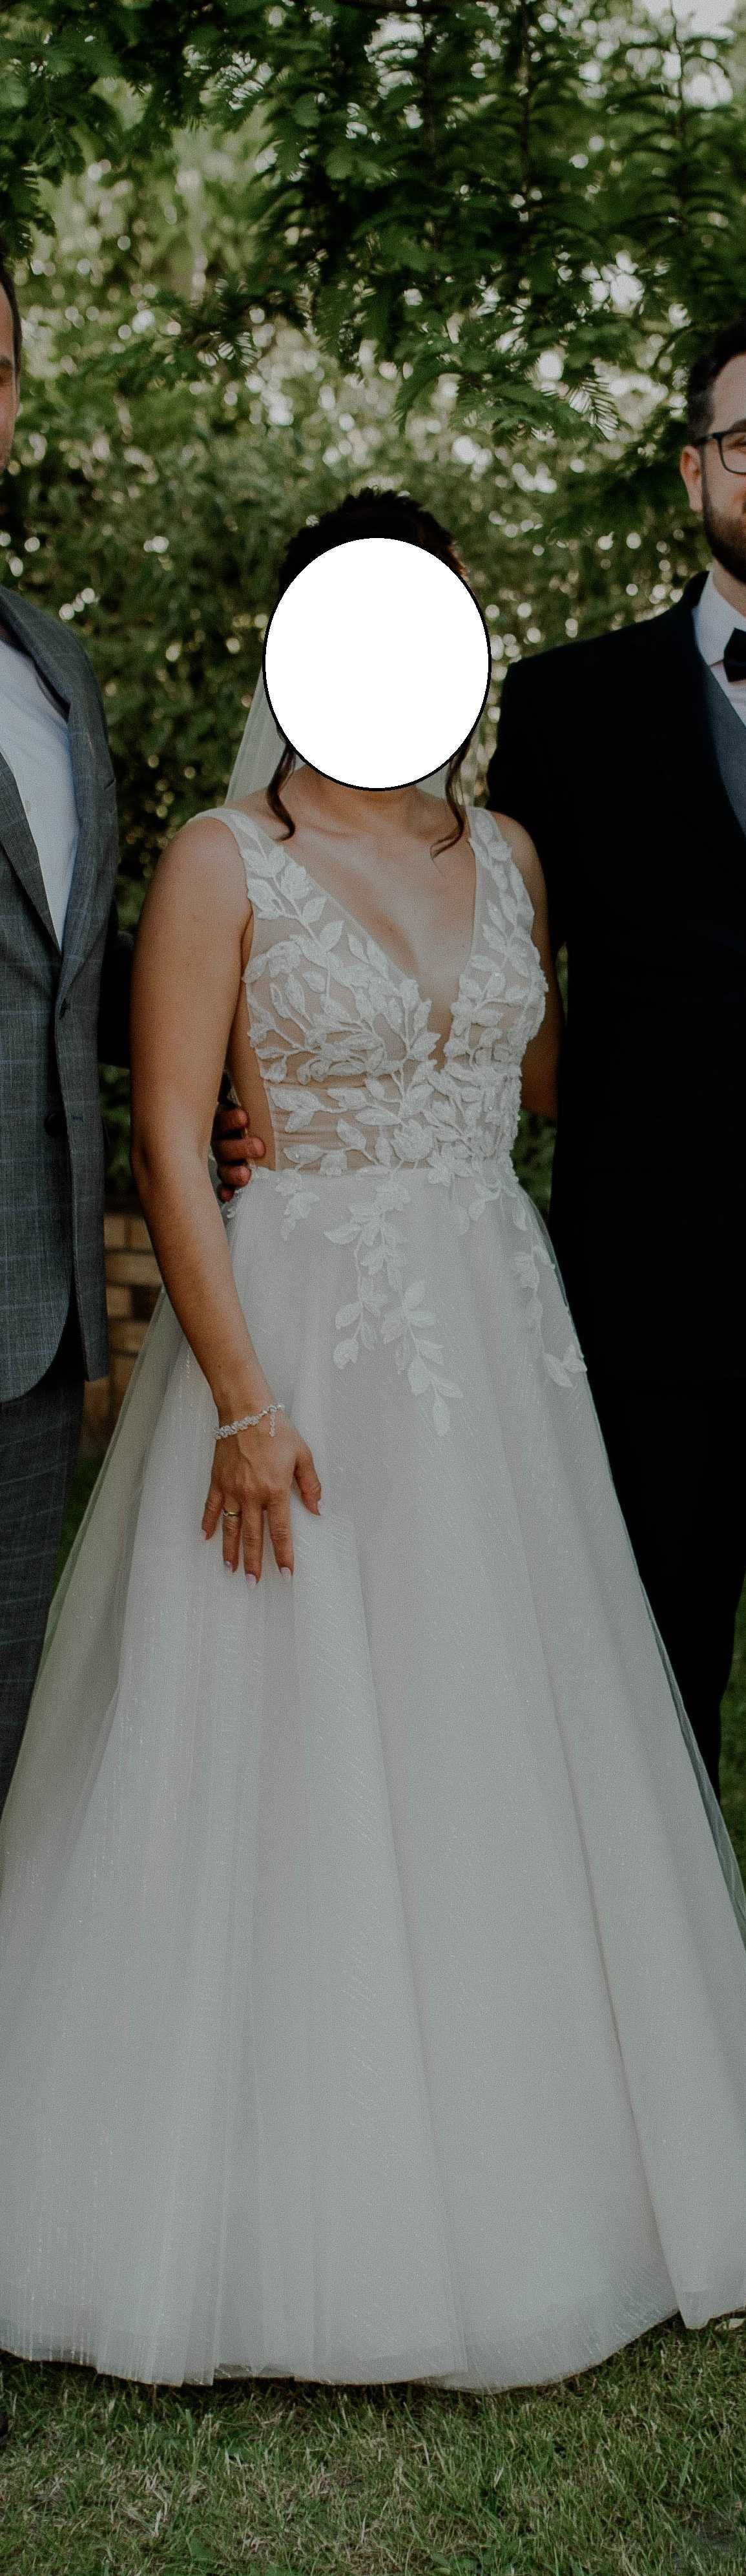 Piękna suknia ślubna ivory